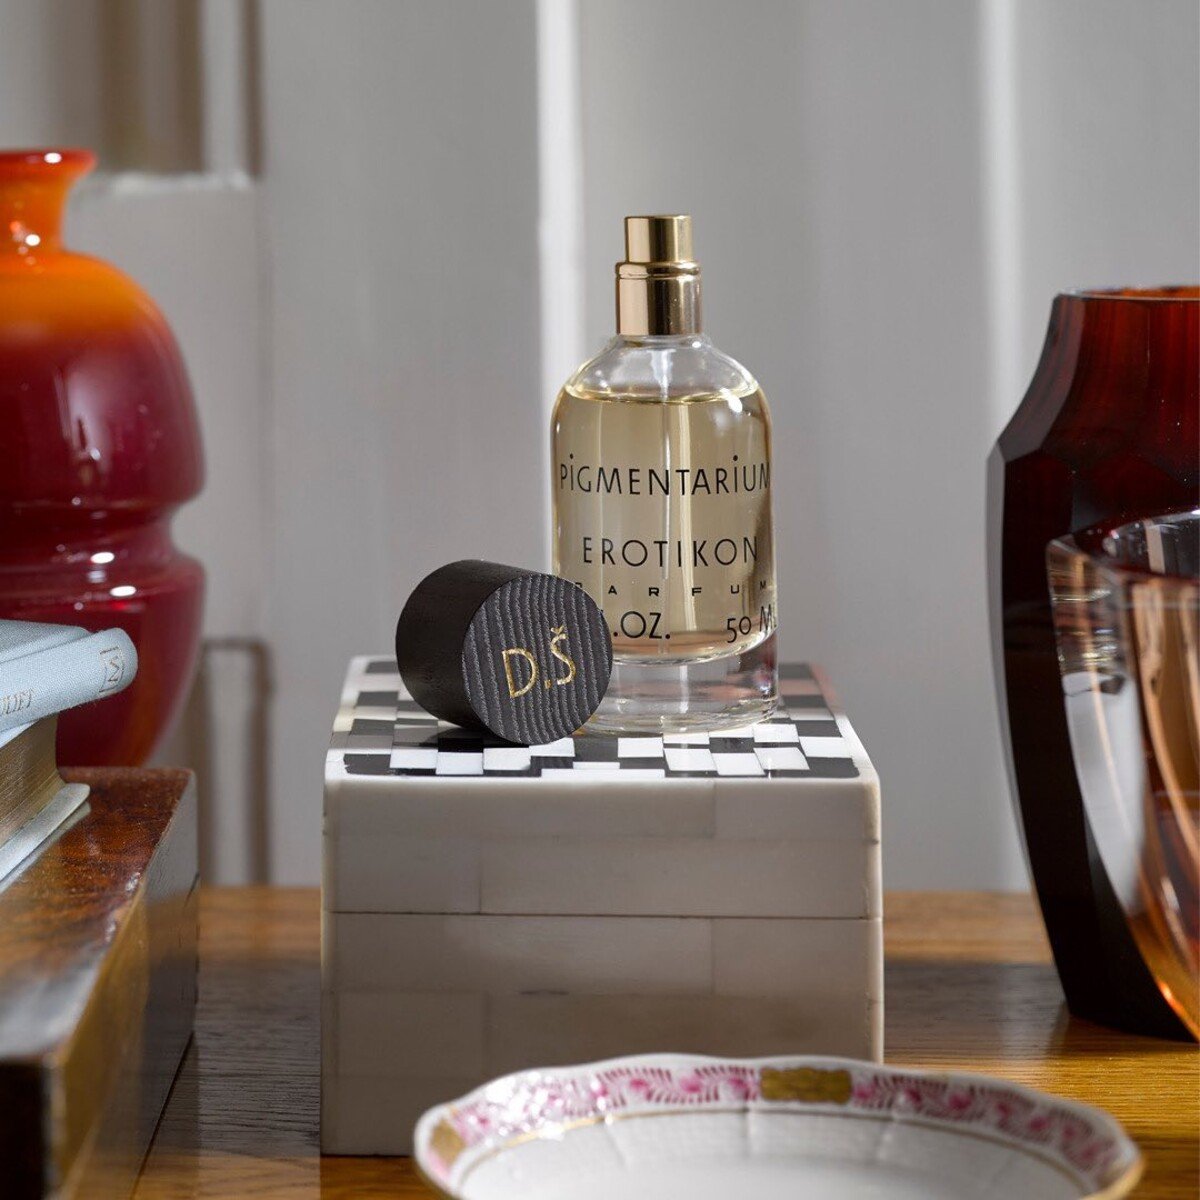 Vo svojom projekte predstavuje aj službu personalizácie flakónu jednotlivých parfumov. Personalizáciu považujú za produkt, ktorý do sveta niche parfumov patrí. Iniciály sa vytvárajú ručne 24-karátovým zlatom. 

